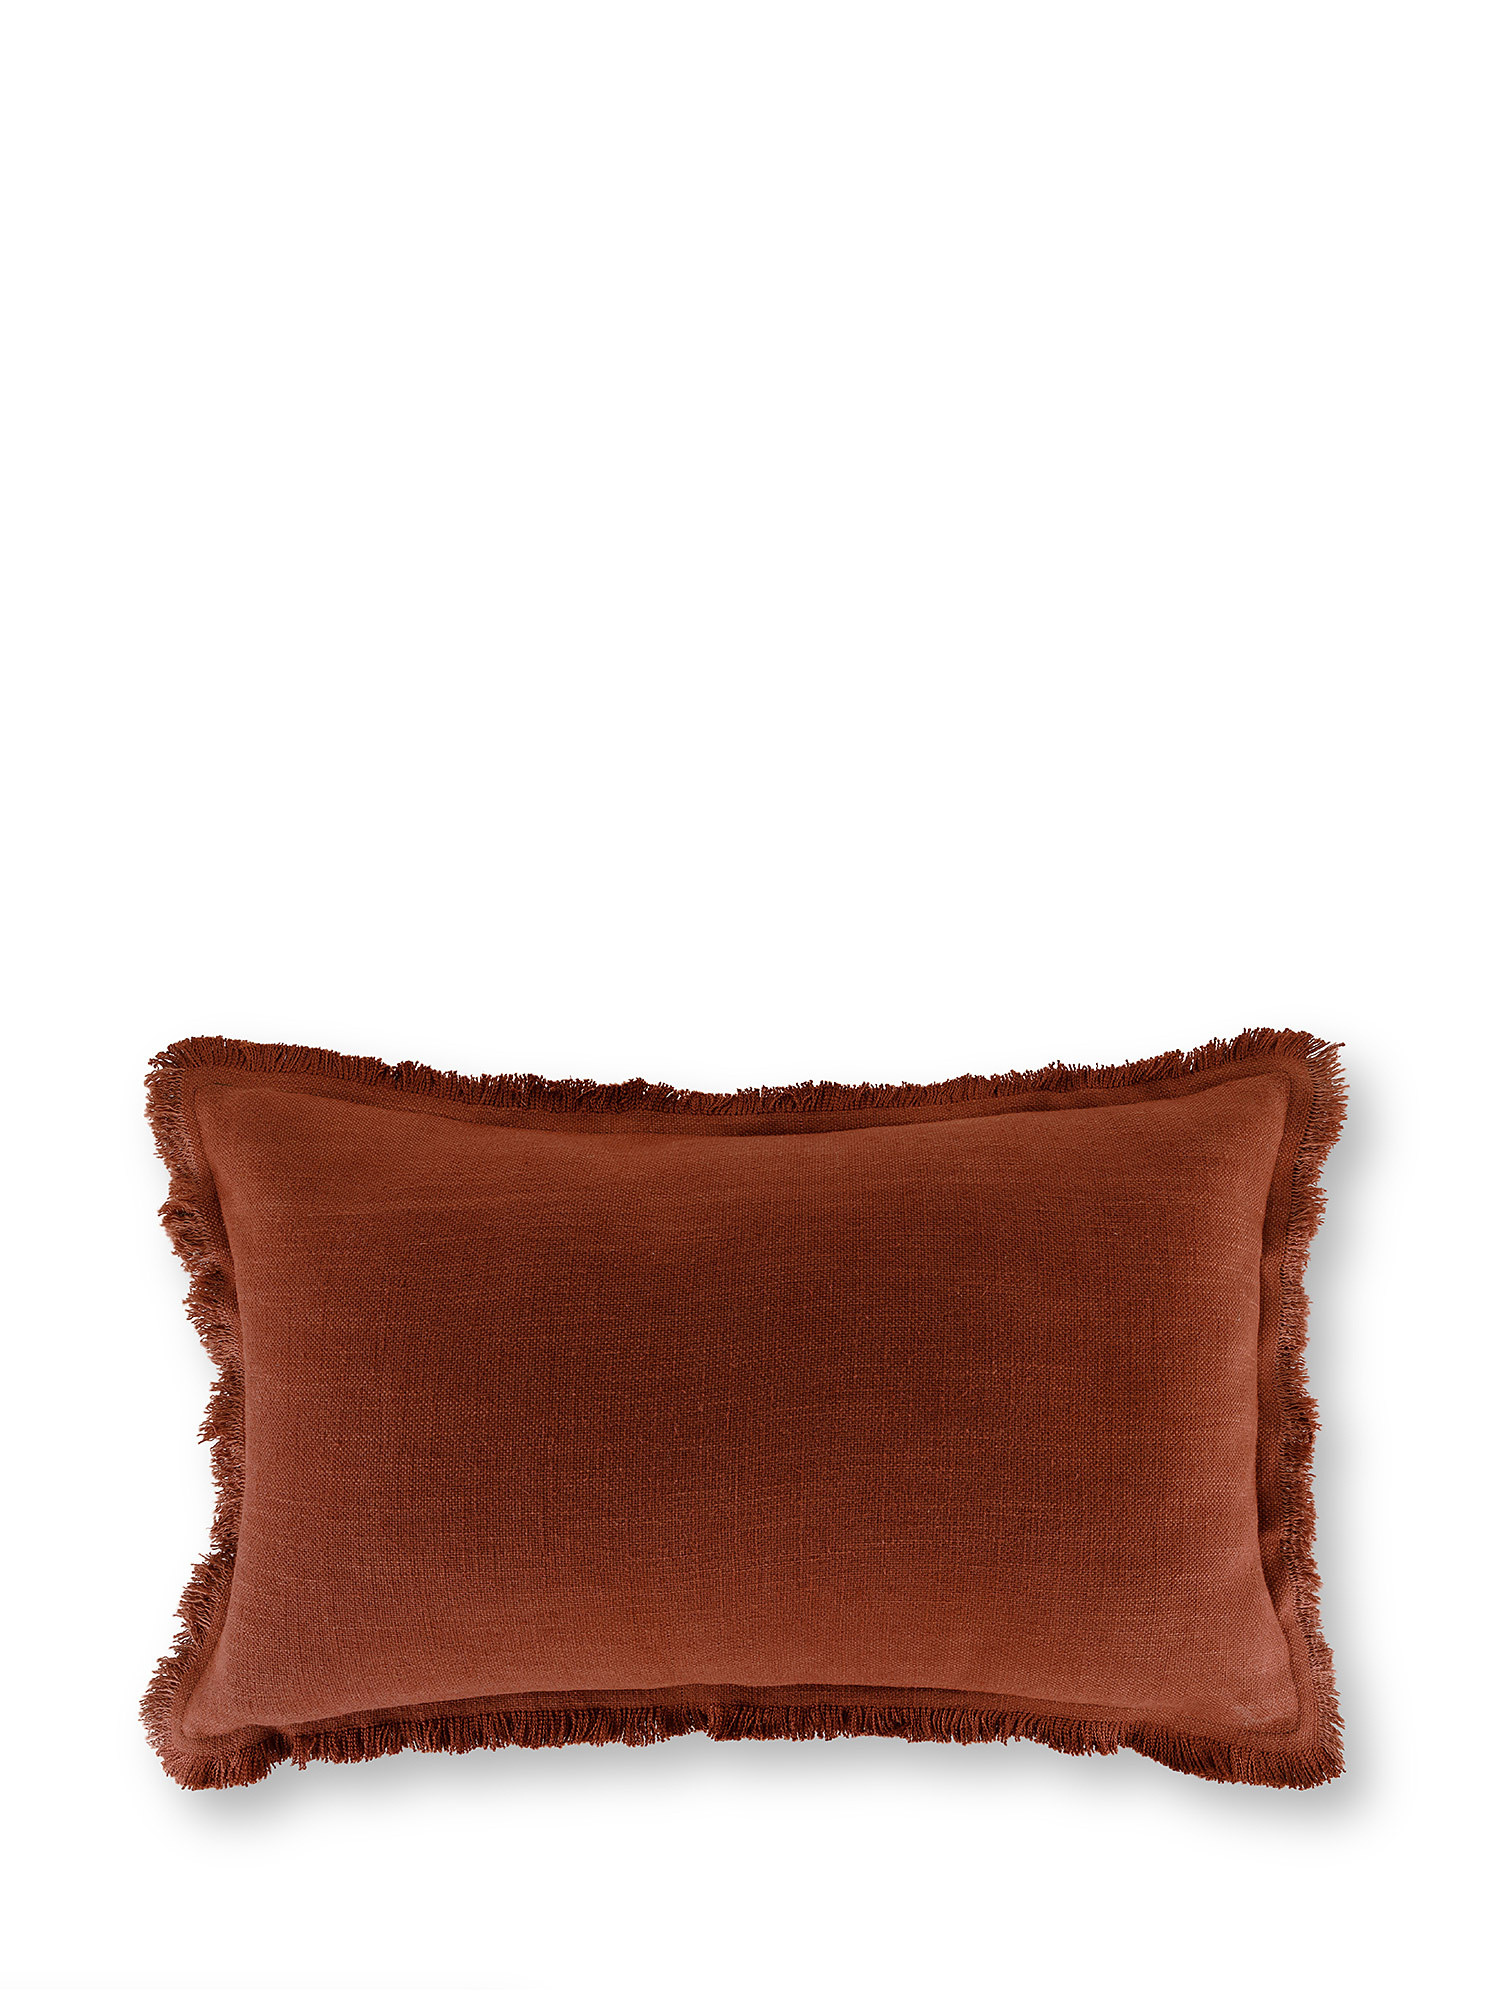 Подушка стираная с бахромой 35х55см Coincasa, коричневый